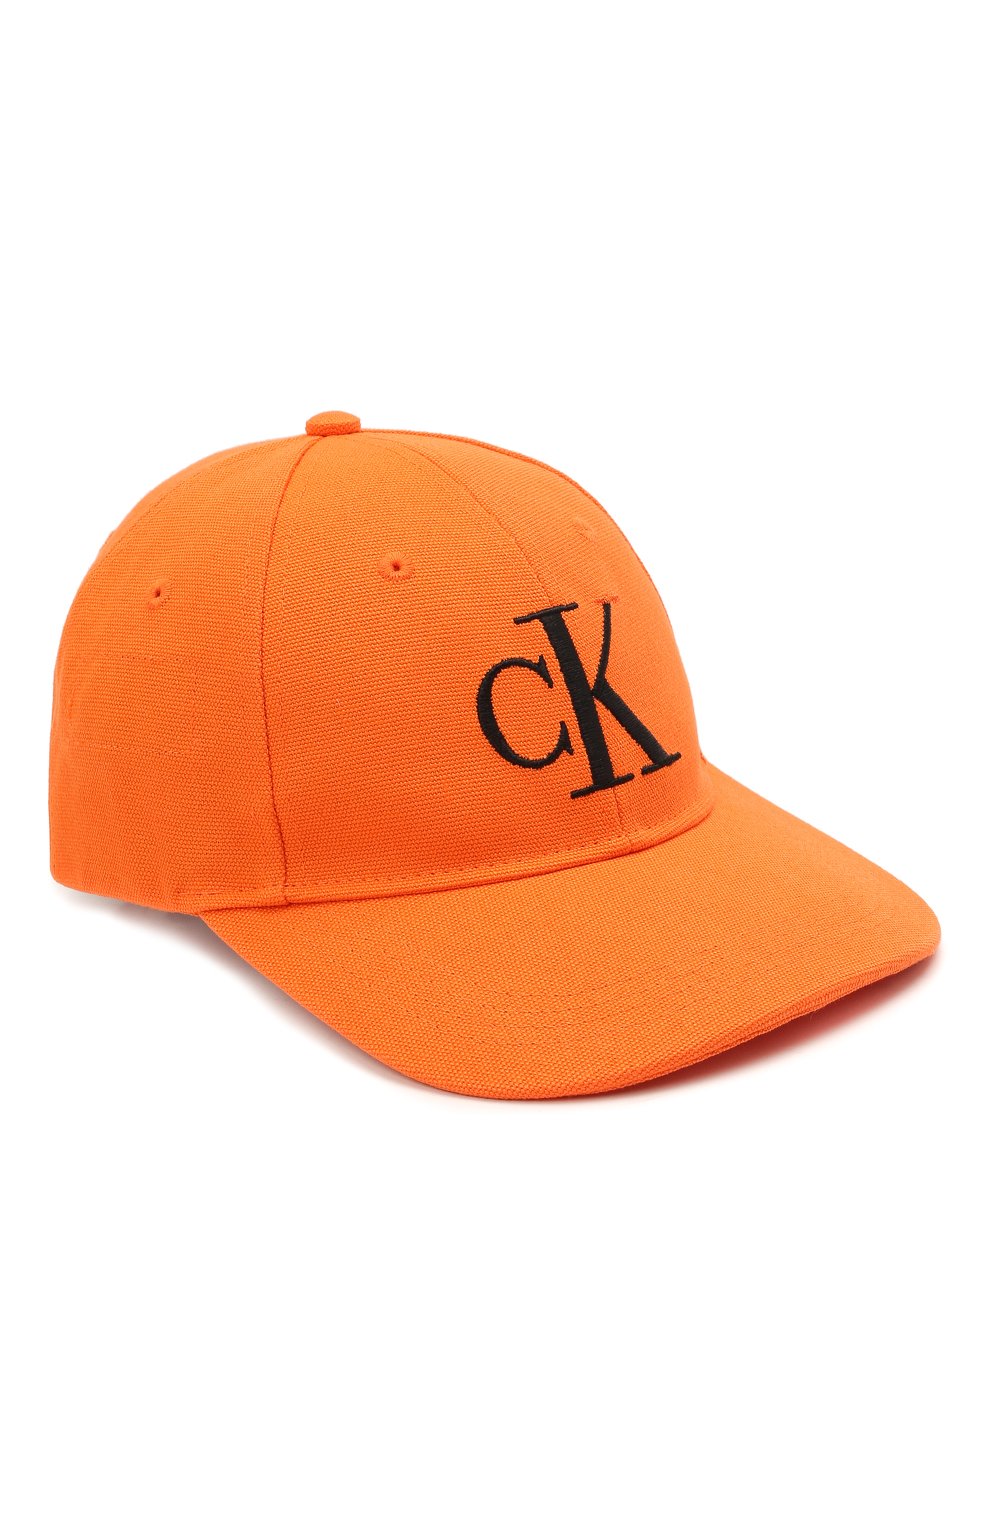 Женская хлопковая бейсболка HERON PRESTON FOR CALVIN KLEIN оранжевого цвета, арт. K50K508122 | Фото 1 (Материал: Текстиль, Хлопок)